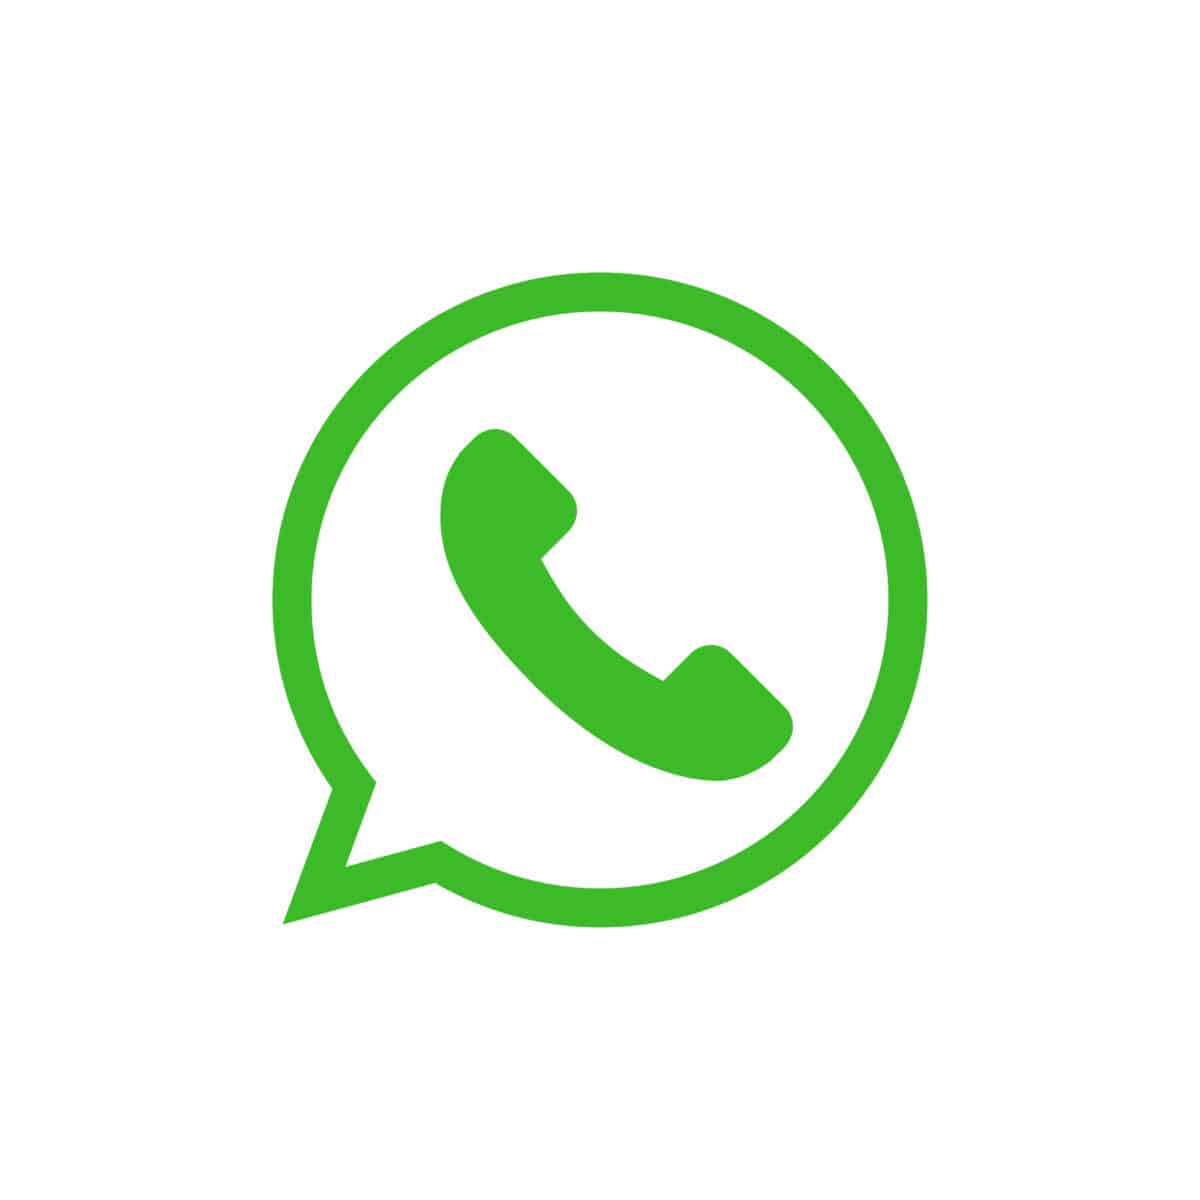 WhatsApp icon on a white background